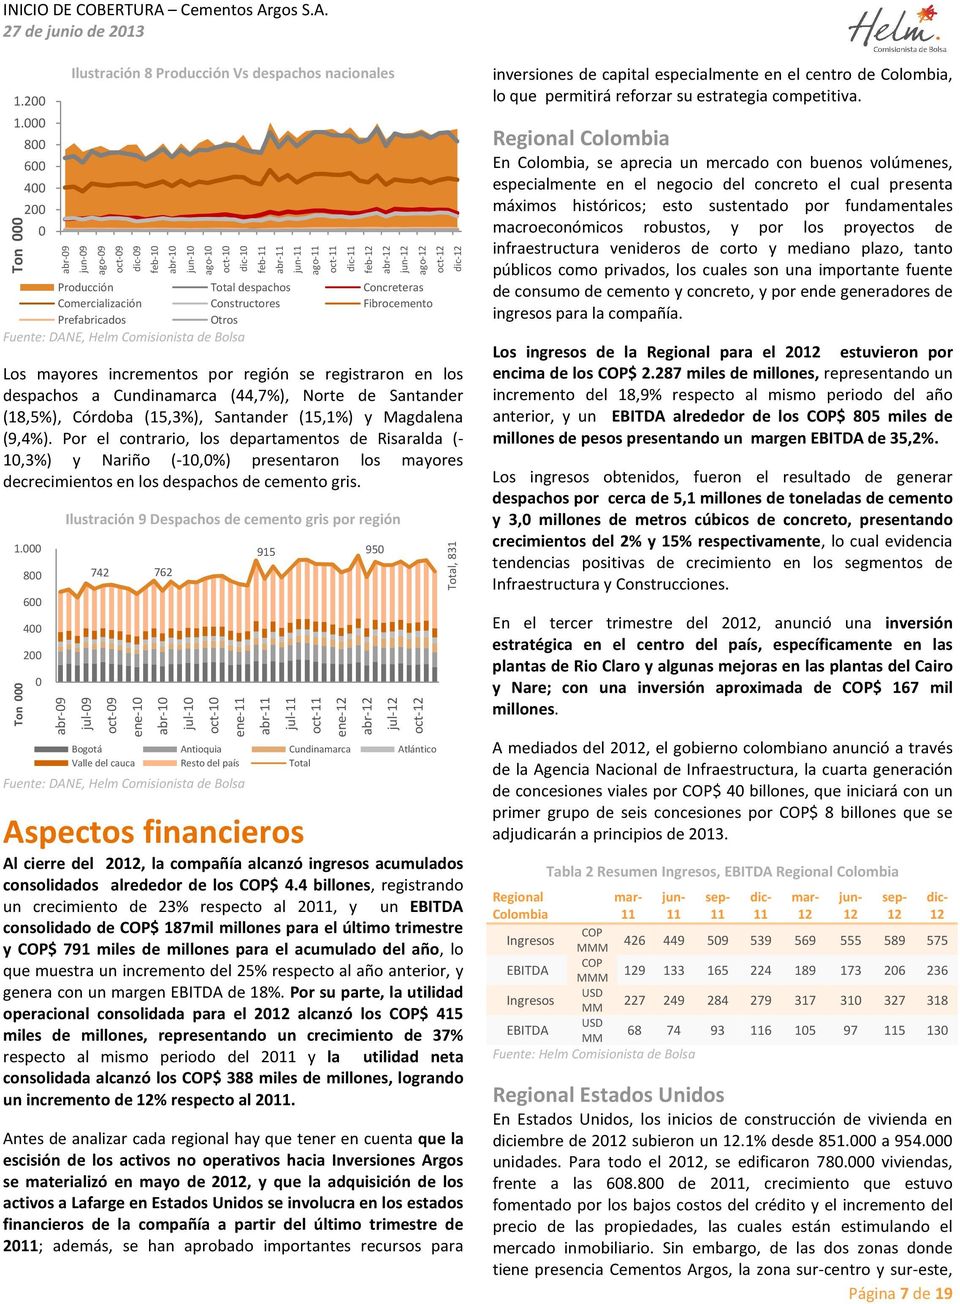 Comisionista de Bolsa Los mayores incrementos por región se registraron en los despachos a Cundinamarca (44,7%), Norte de Santander (18,5%), Córdoba (15,3%), Santander (15,1%) y Magdalena (9,4%).